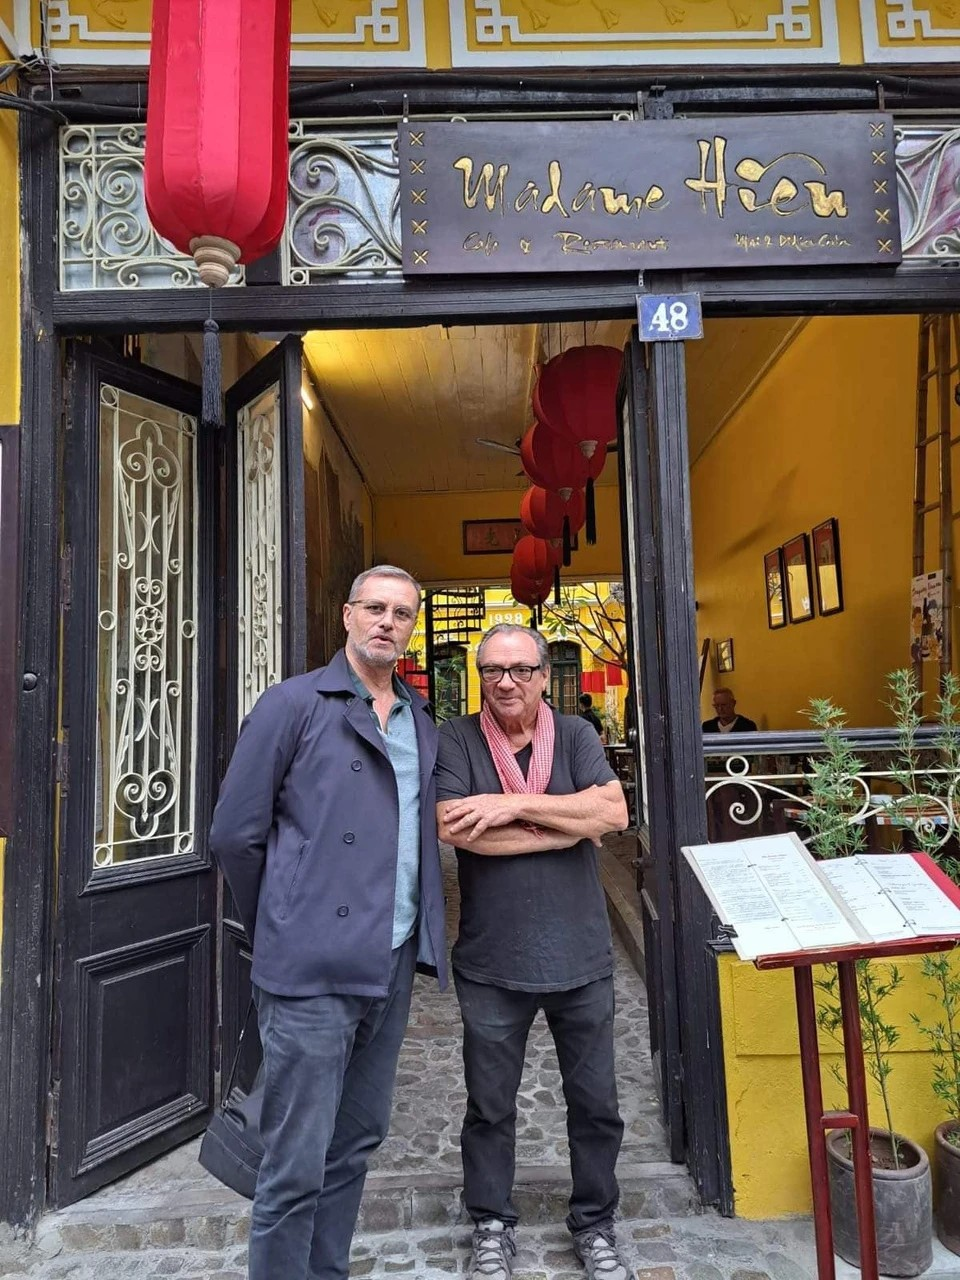 Cận cảnh Nhà hàng Madame Hien Hanoi mà Tỷ phú Tim Cook vừa đặt chân đến, từng tiếp đón nhiều nguyên thủ quốc gia